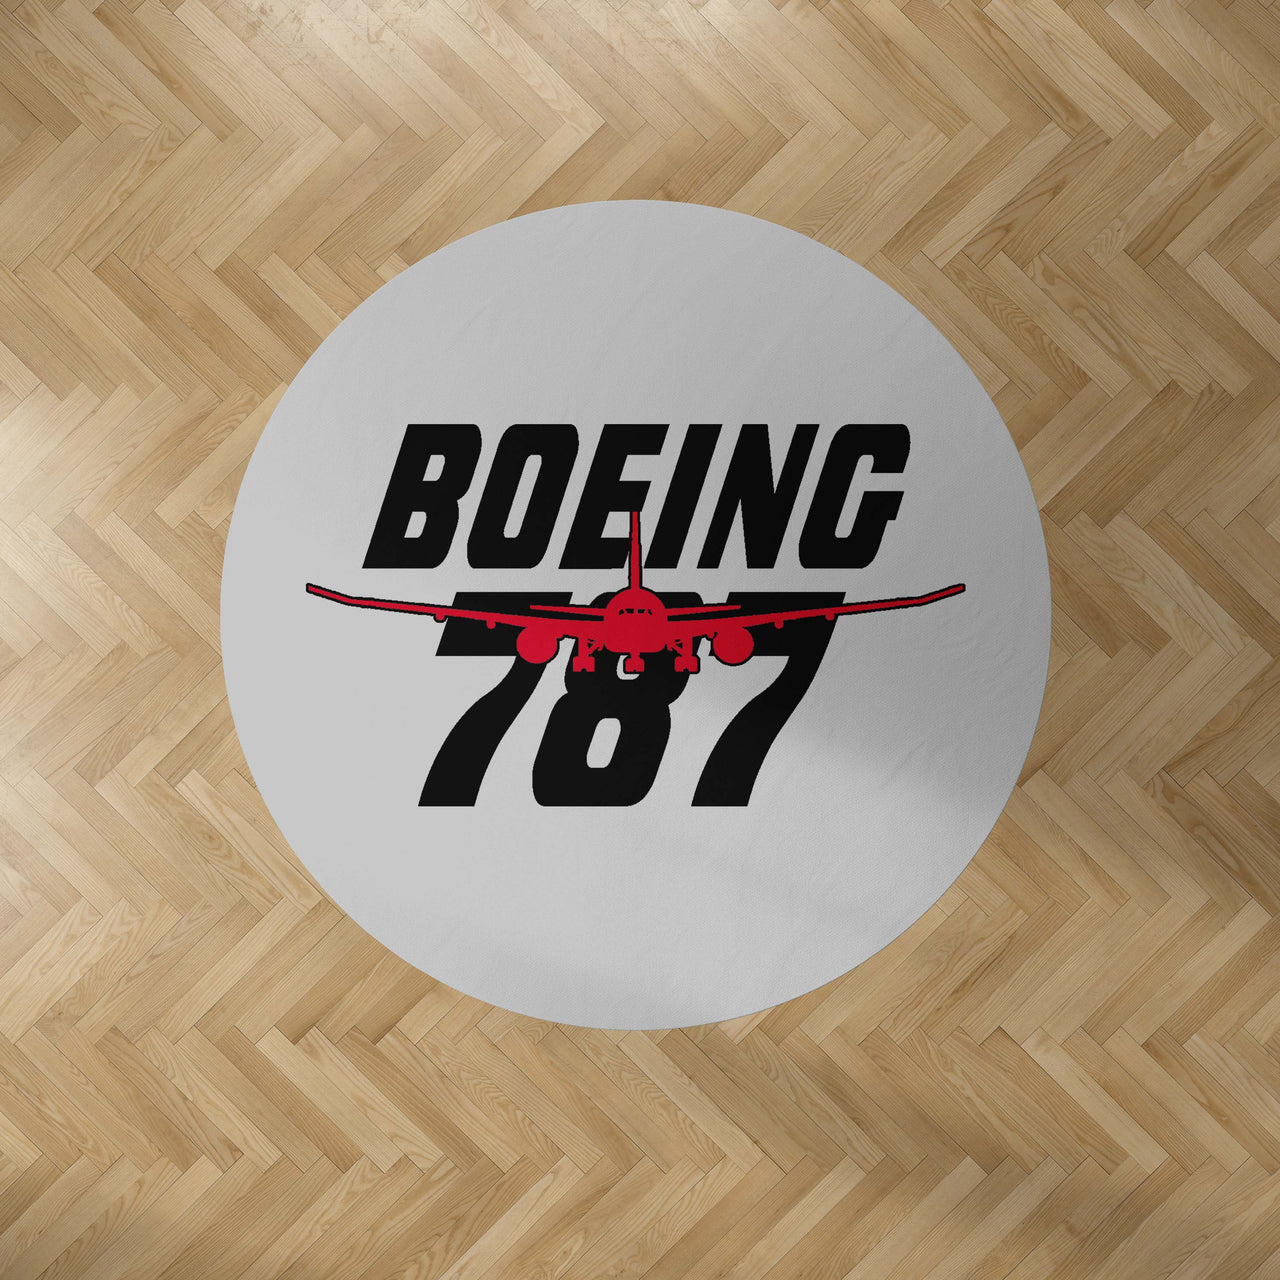 Amazing Boeing 787 Designed Carpet & Floor Mats (Round)